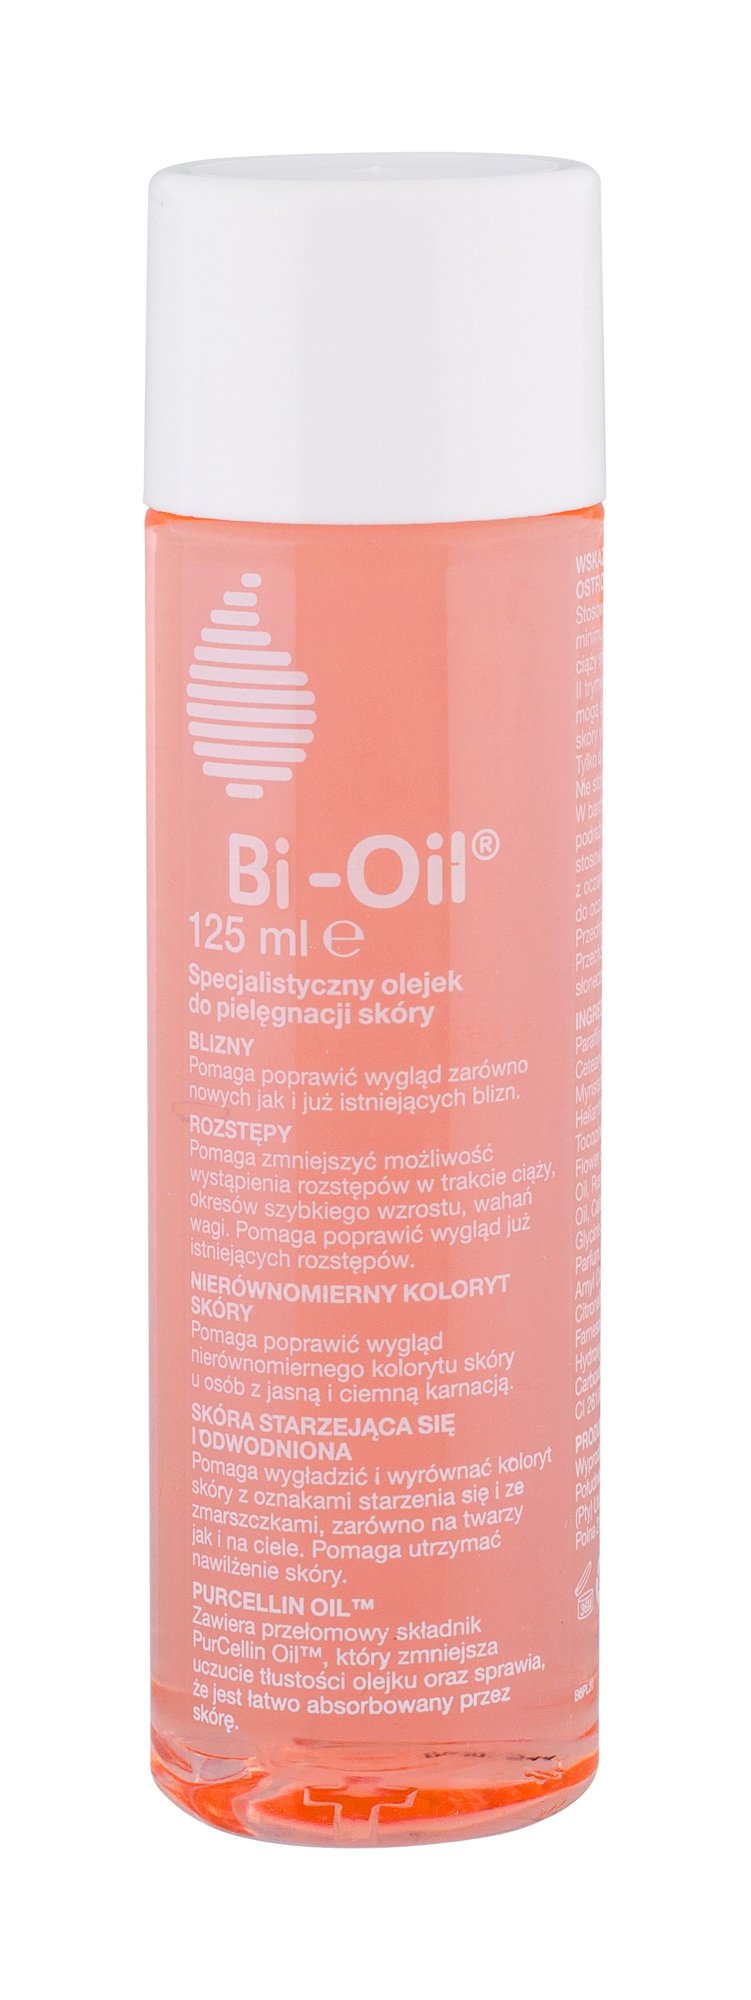 Bio-Oil PurCellin Oil